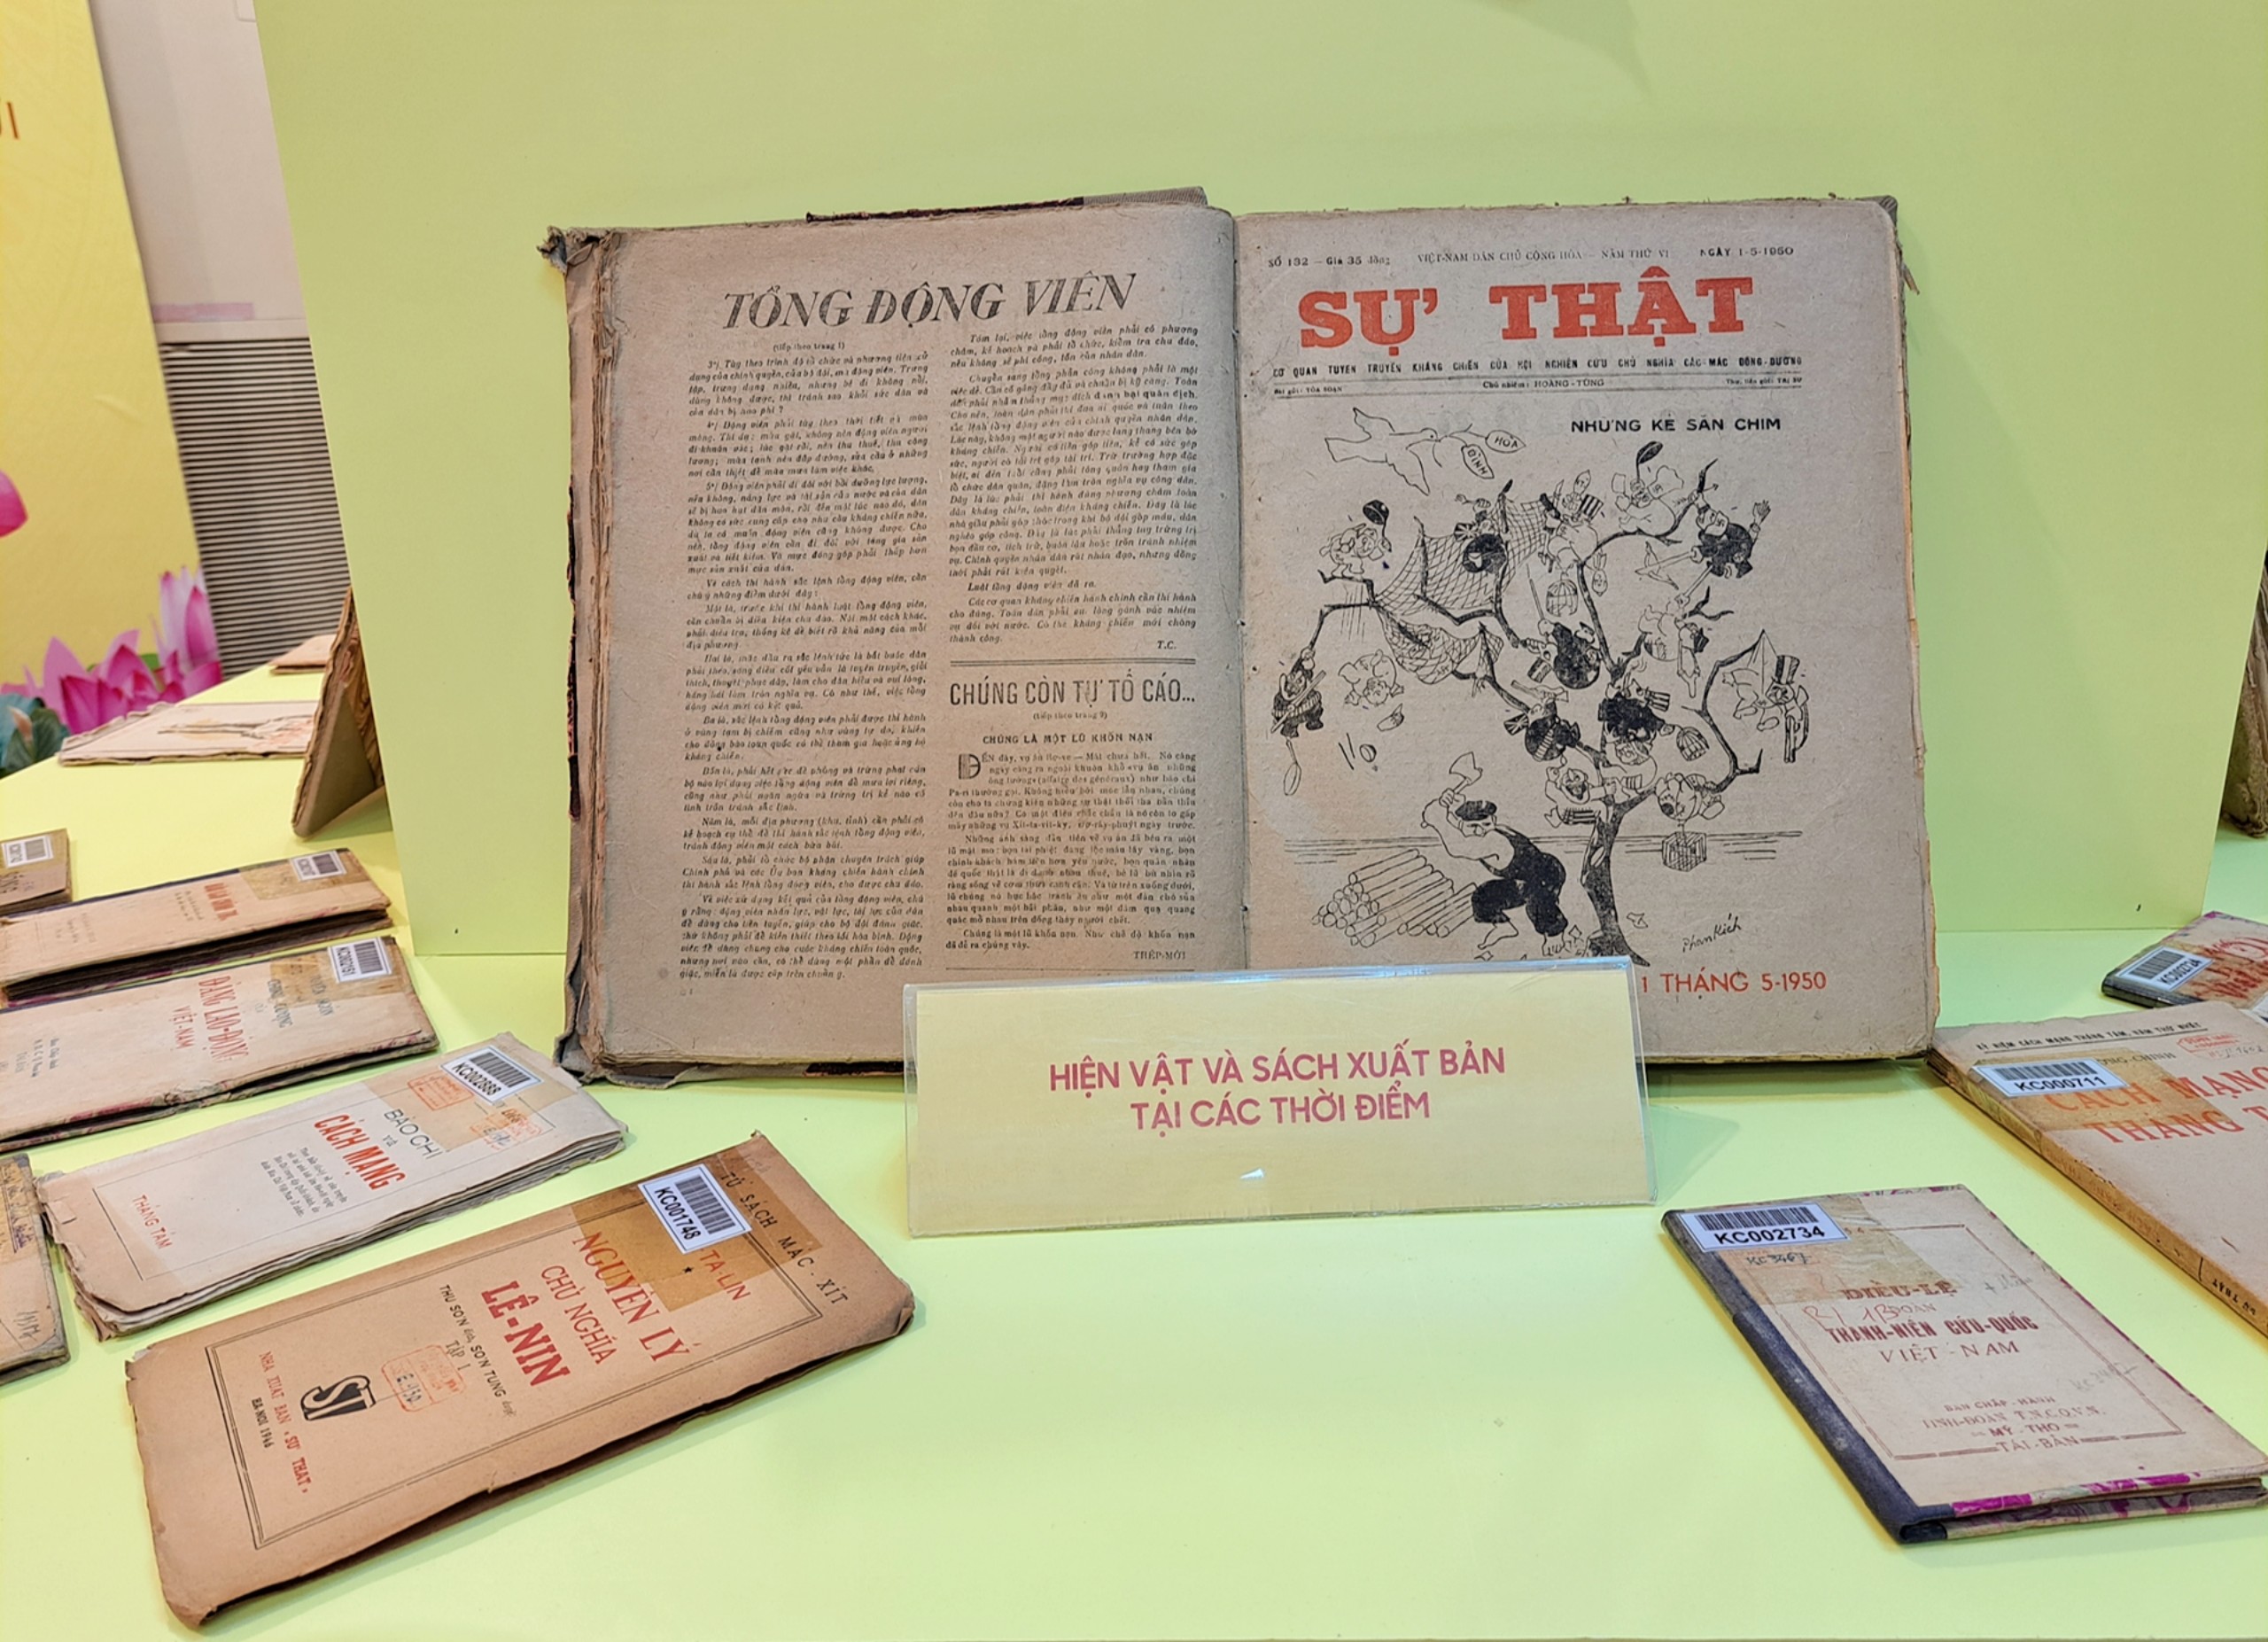 Trưng bày 2.500 cuốn sách, tư liệu, hiện vật nhân dịp Kỷ niệm 70 năm ngày truyền thống ngành Xuất bản Việt Nam - 12